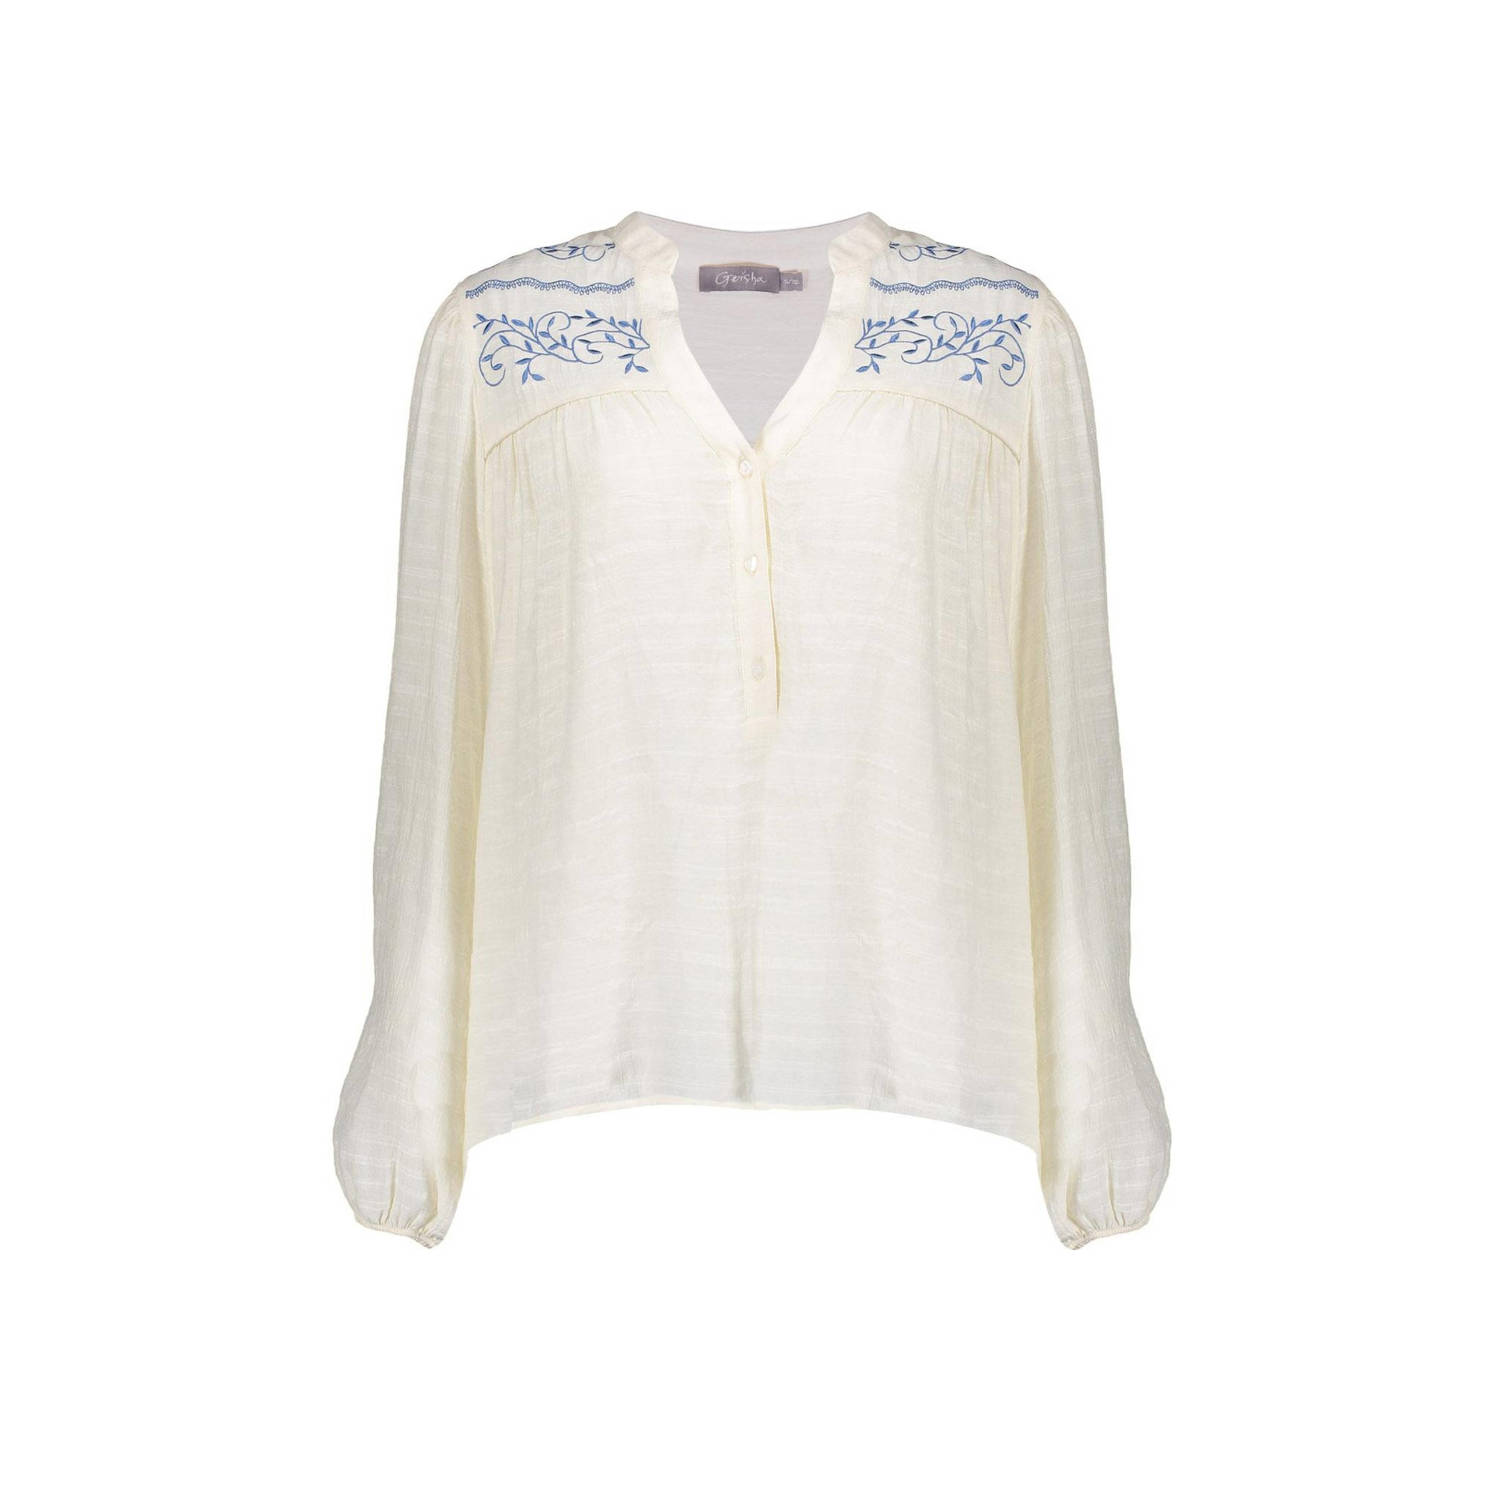 Geisha blouse embroidery at joke 43083-14 10 off-white blue White